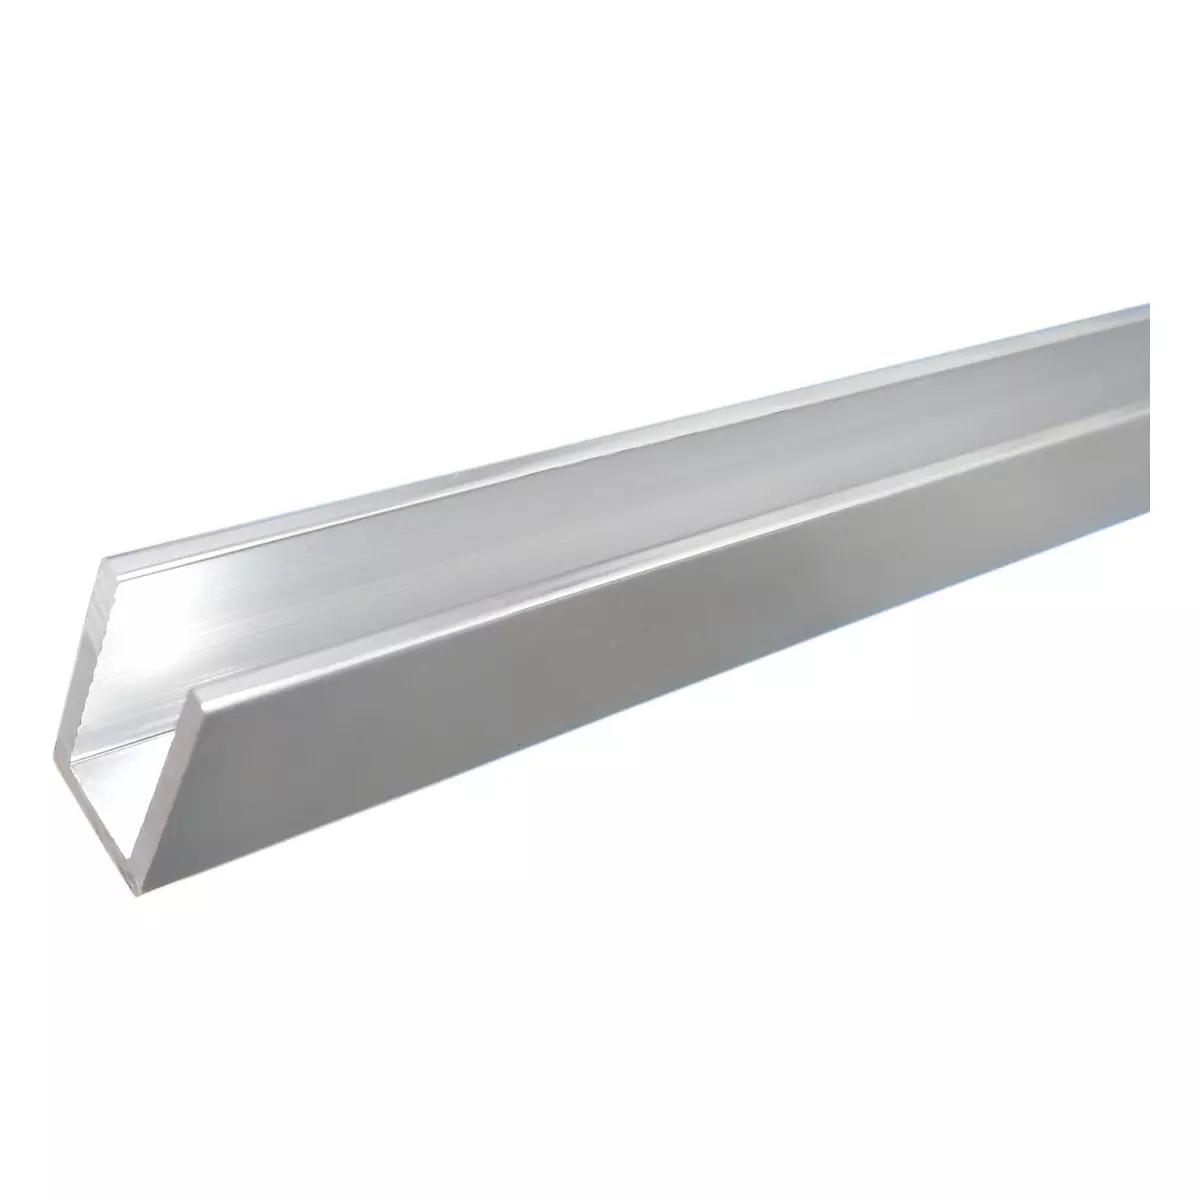 Profil aluminiowy do montażu szkła 8mm L-3m aluminium polerowane